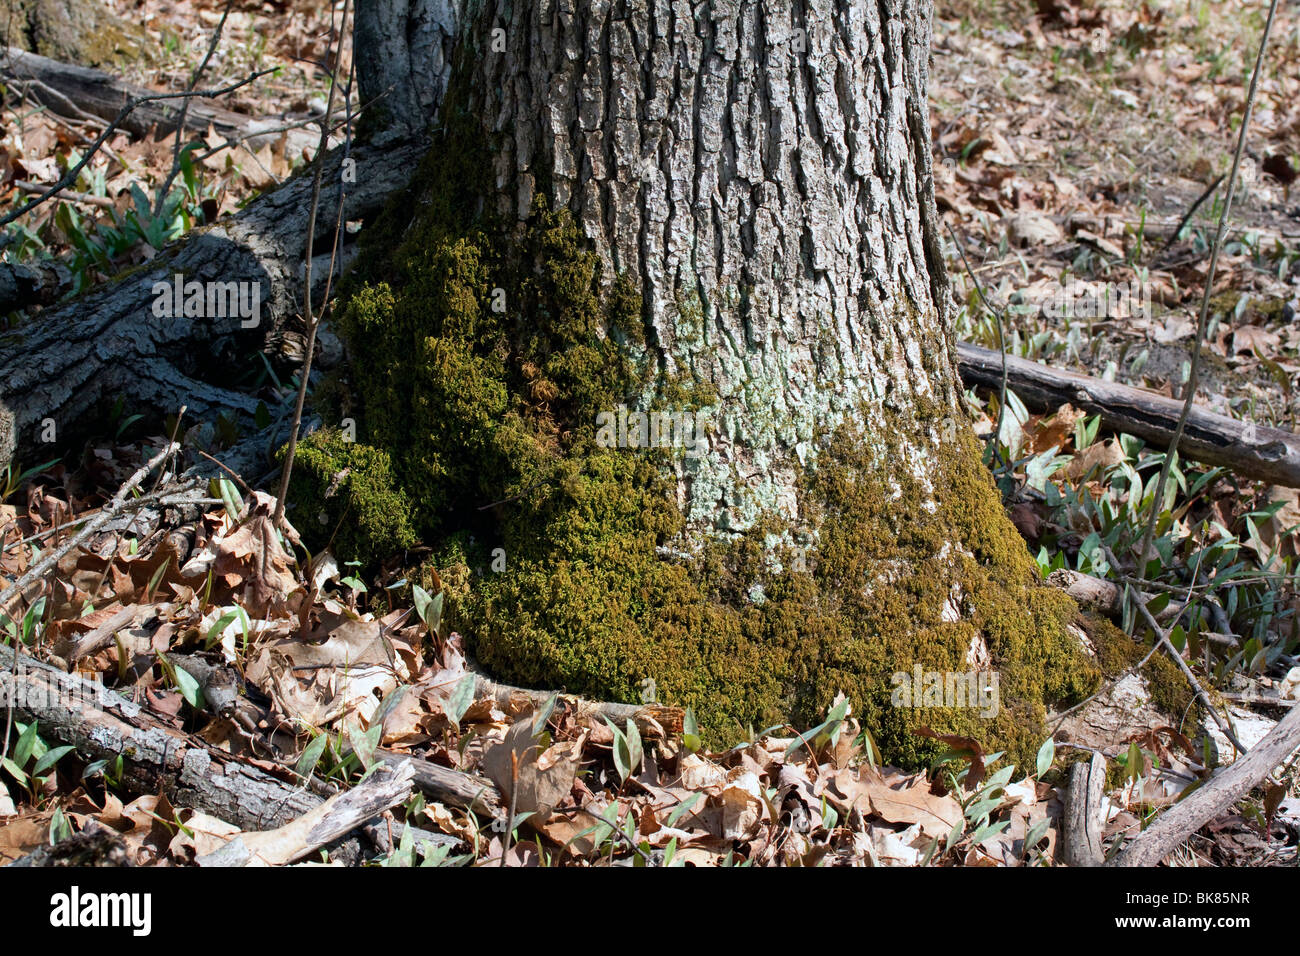 Teppich Moos wachsen auf Baumstamm östlichen Laubwald E USA, durch Dembinsky Foto Assoc Stockfoto